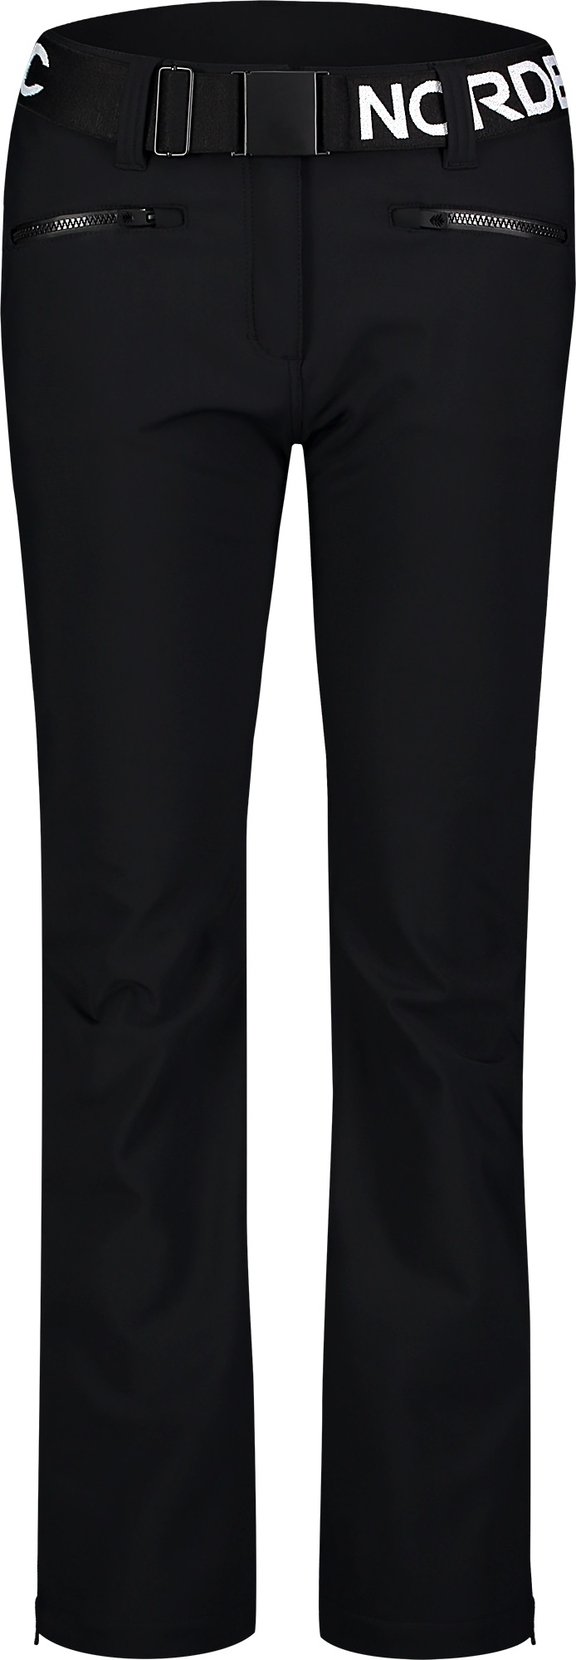 Dámské softshellové lyžařské kalhoty NORDBLANC - Profound - NBWP7940